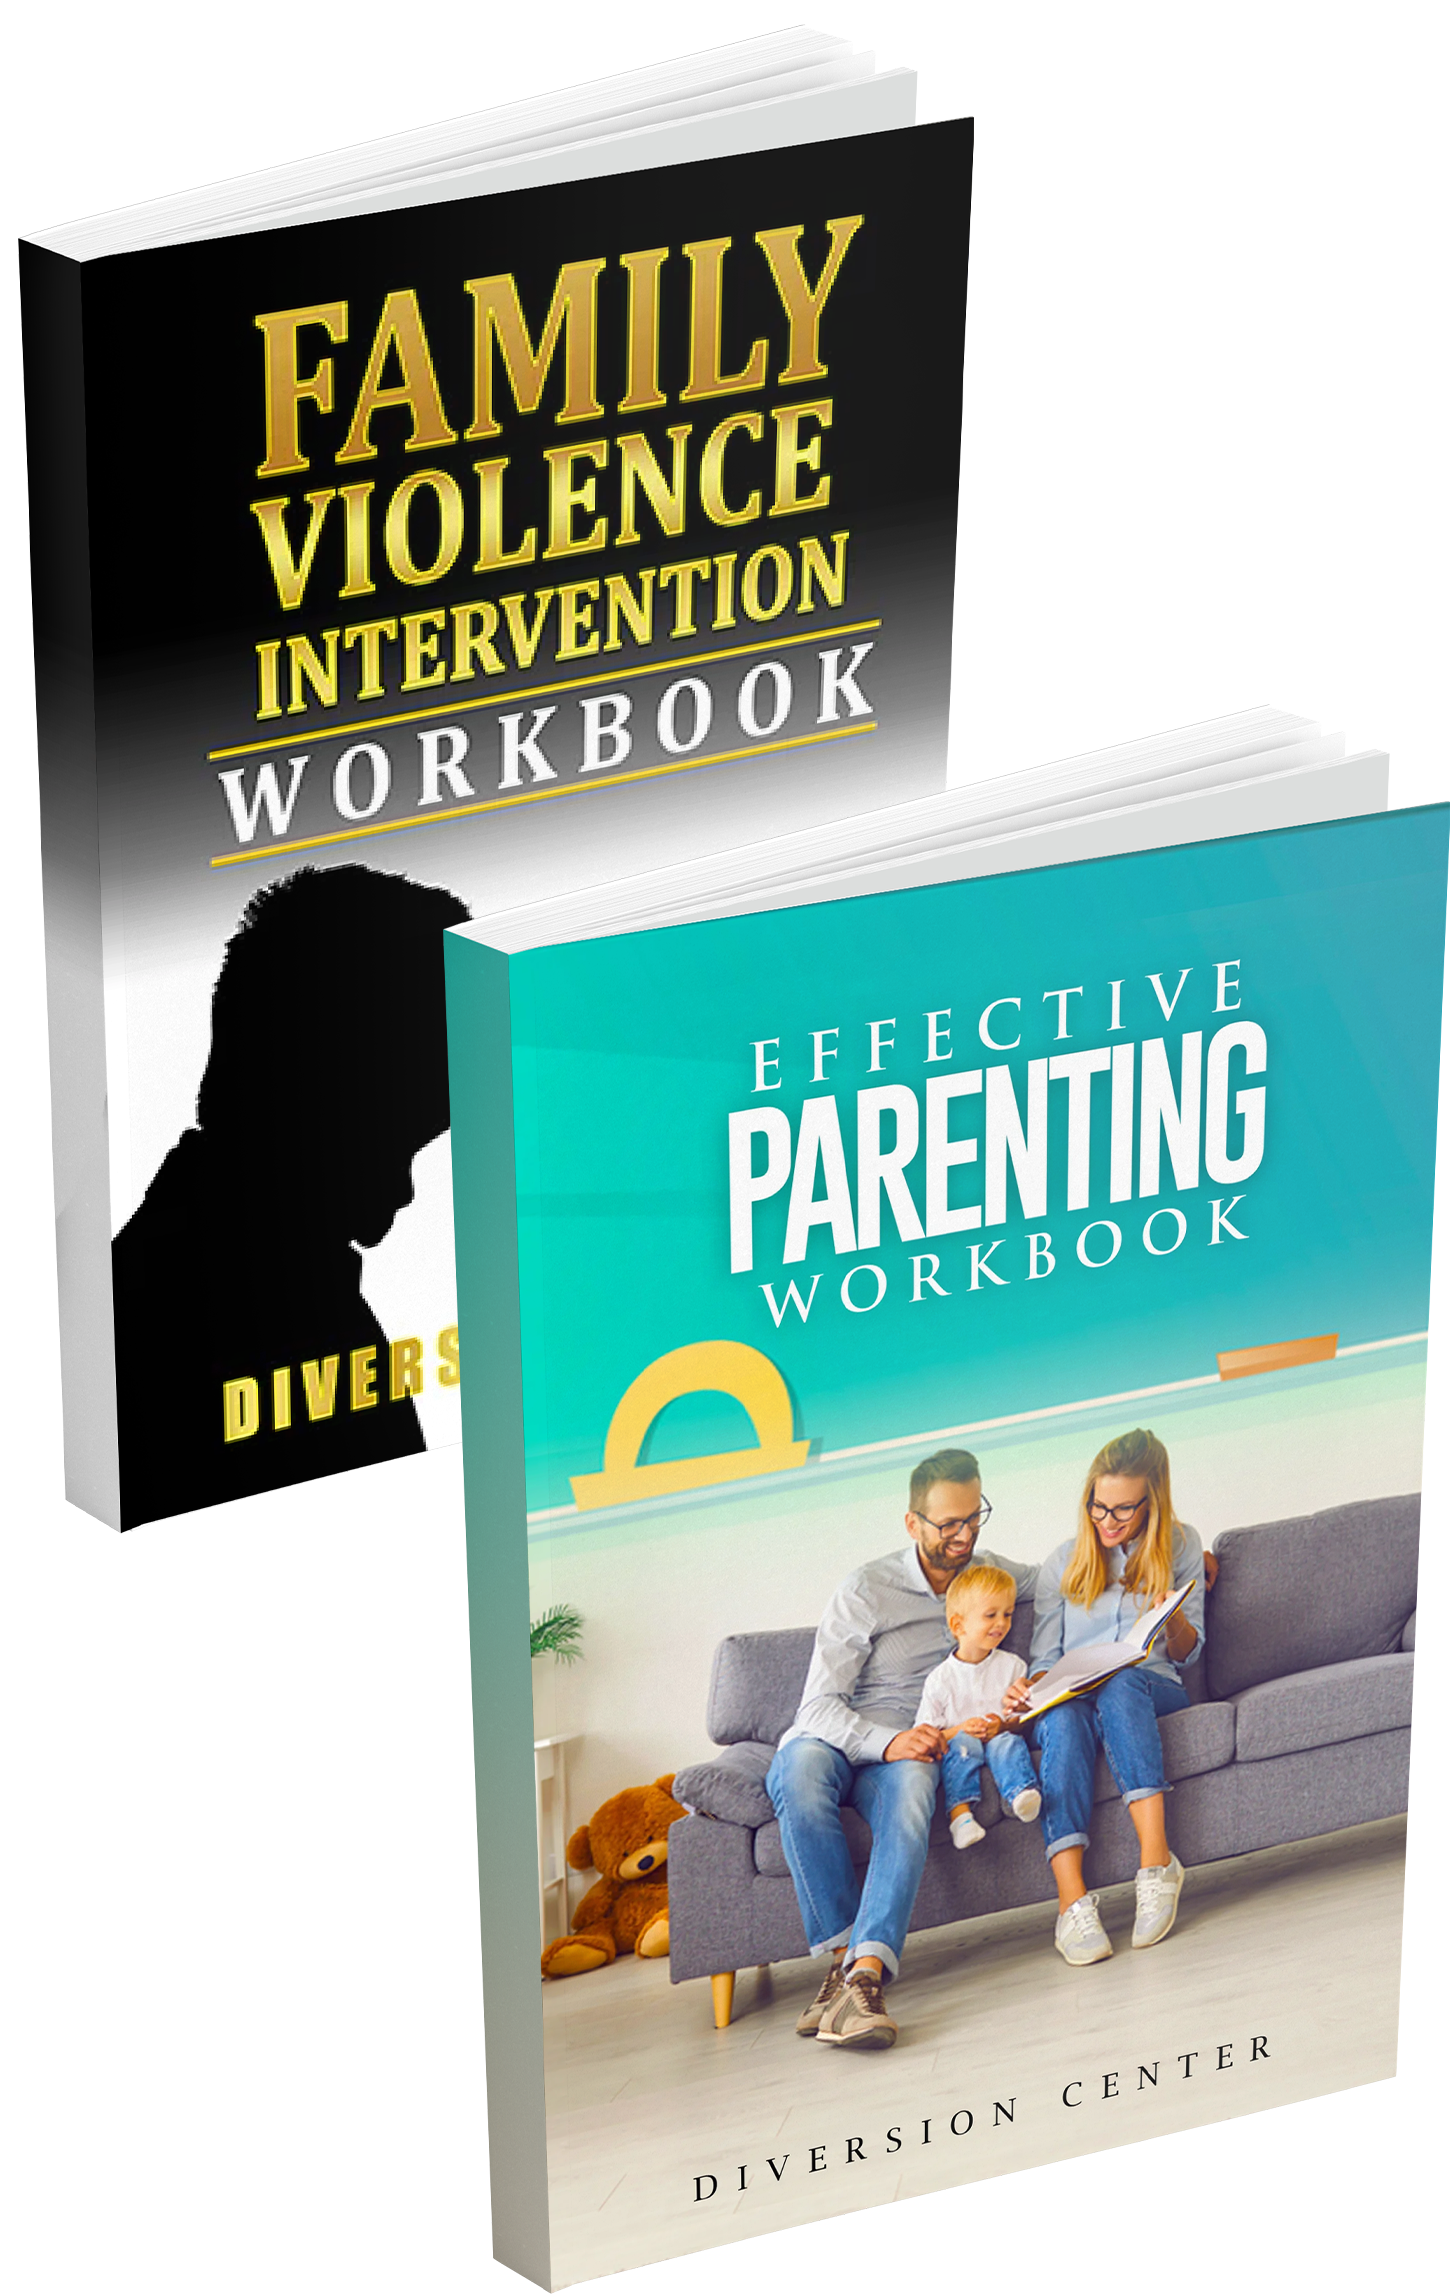 Domestic Violence + Parenting Workbook Bundle